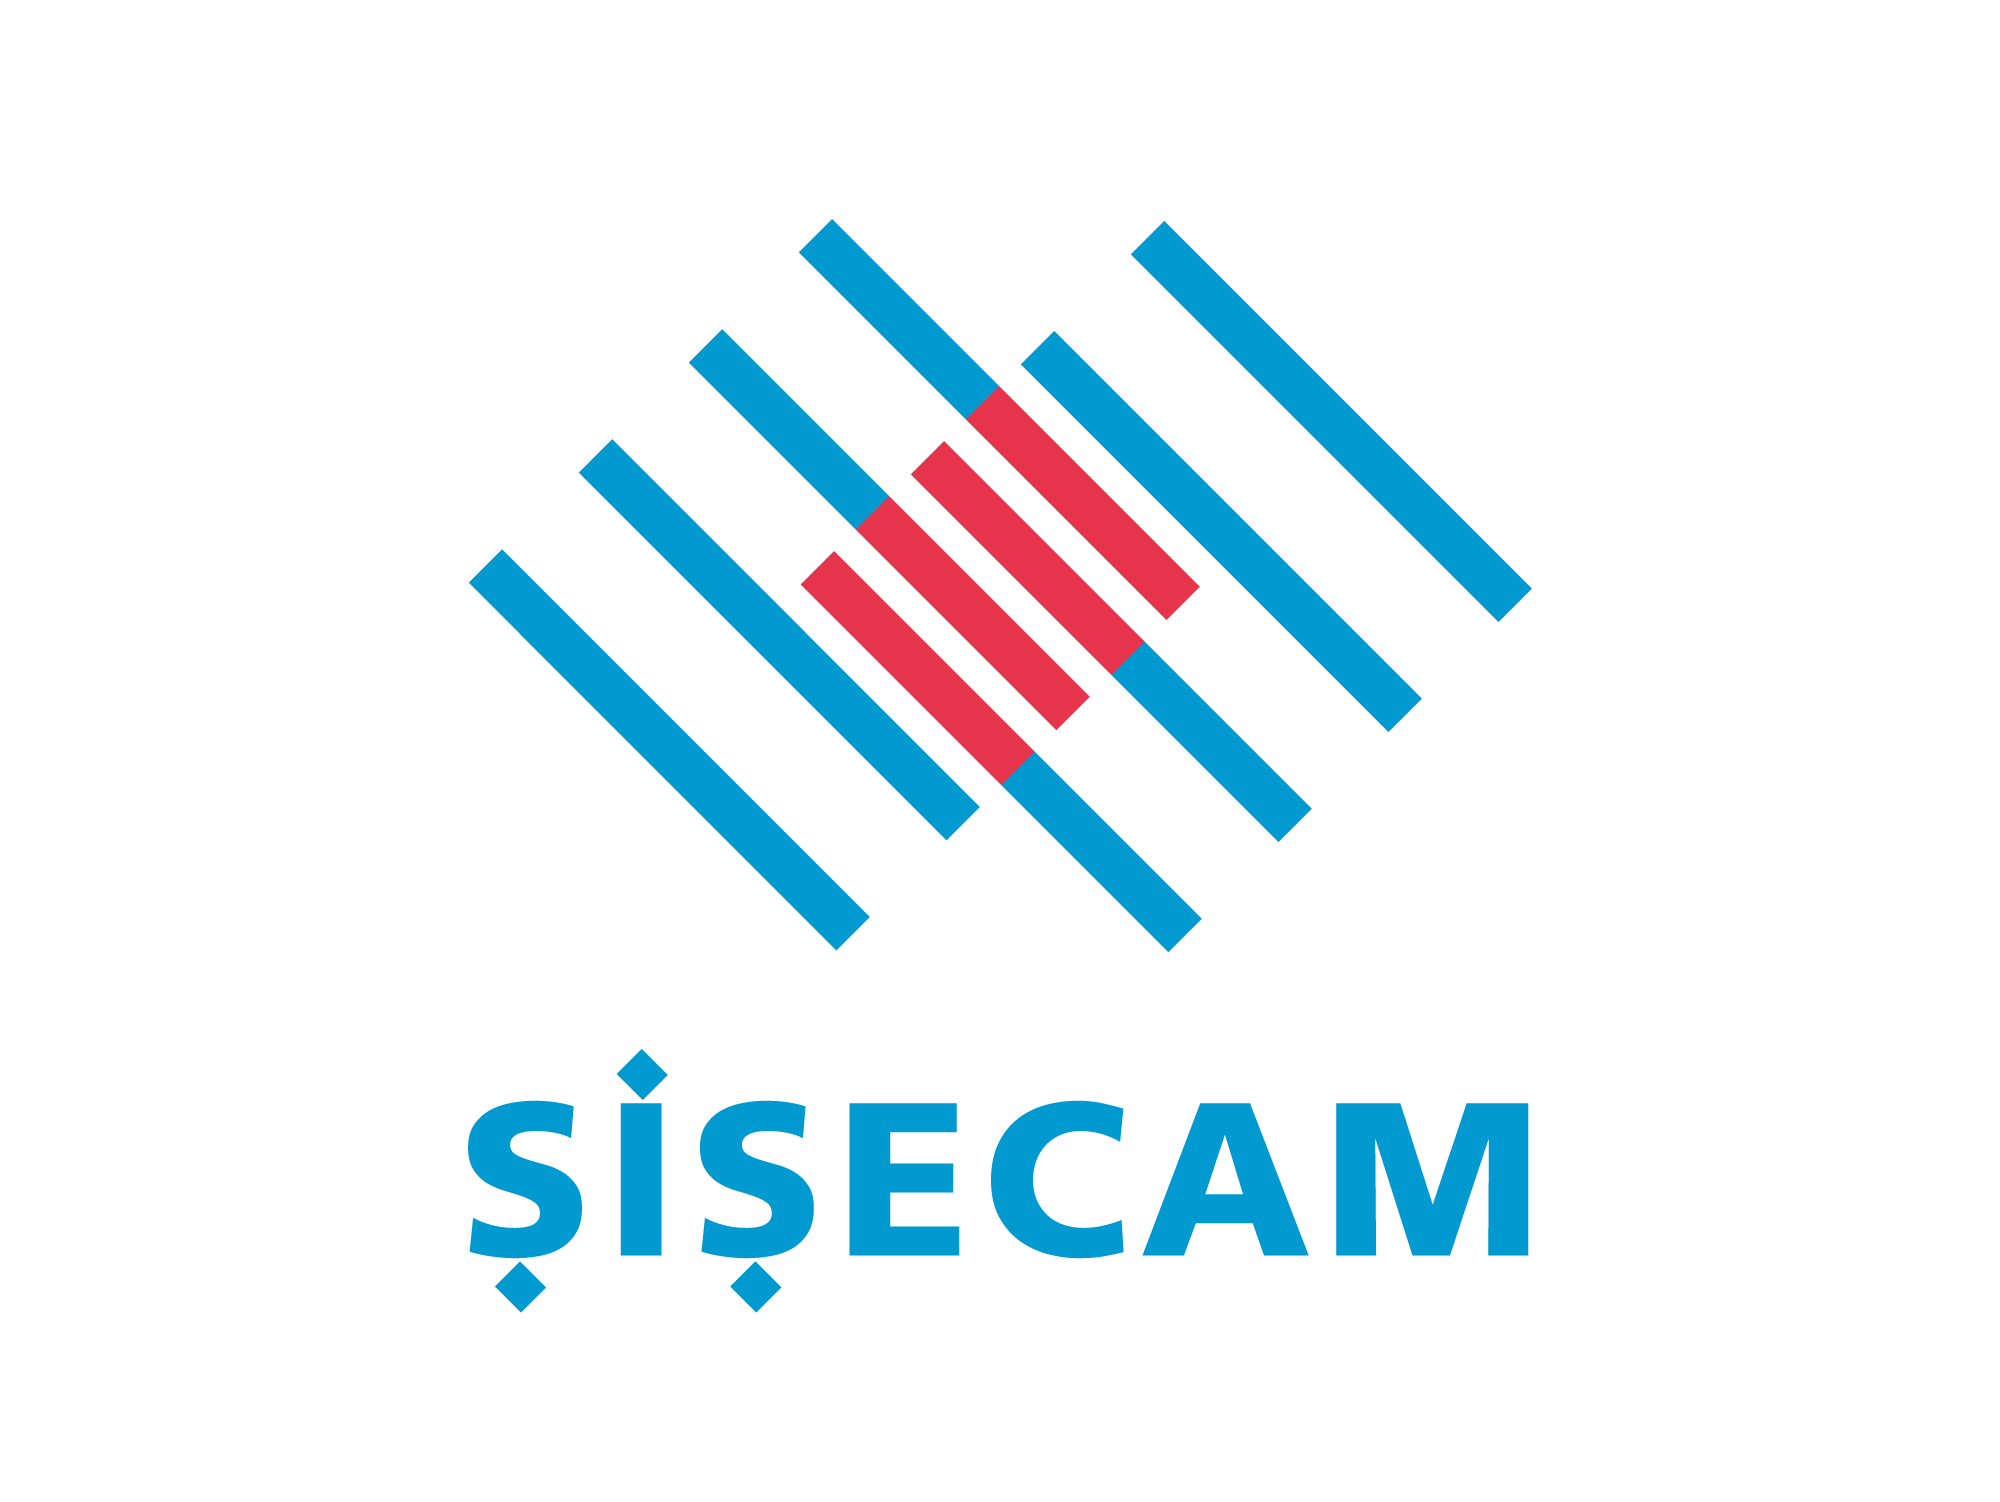 Sisecam Brand Logo